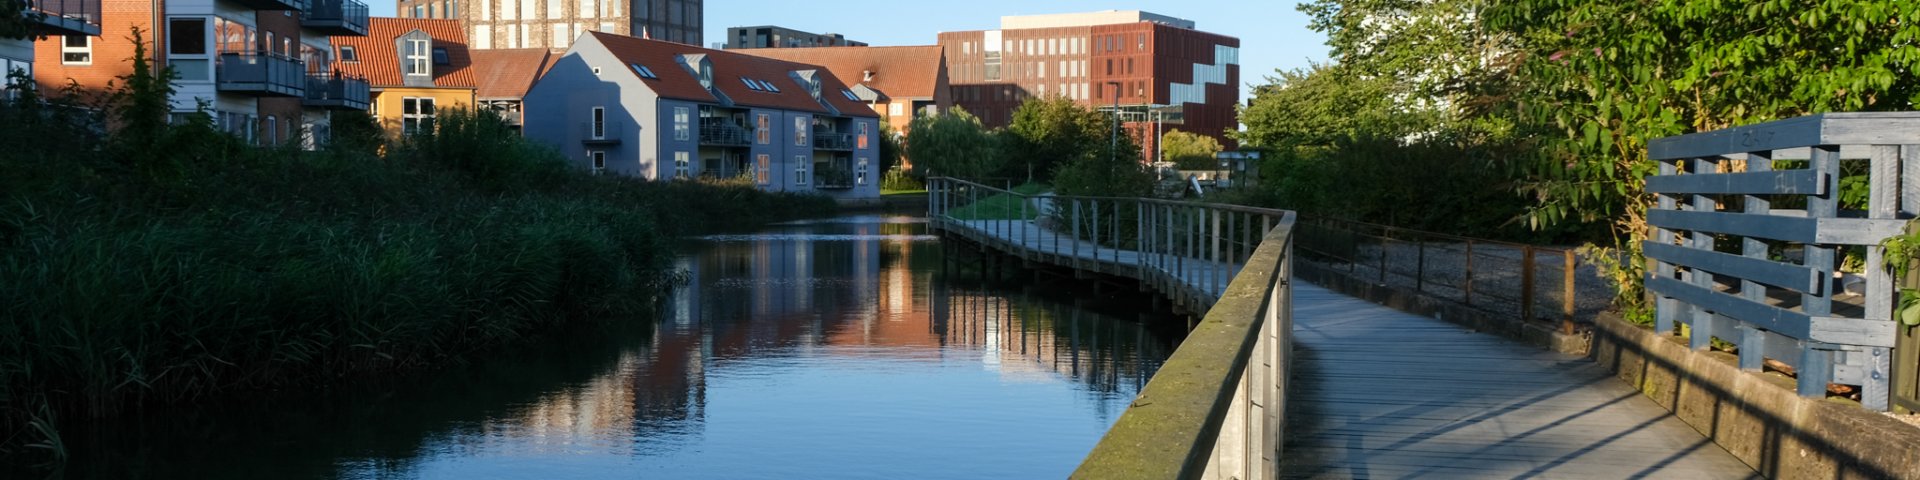 Kolding Å, der løber gennem midtbyen i Kolding, med en gangbro i højre side af billedet og byens huse til venstre på den anden side af åen